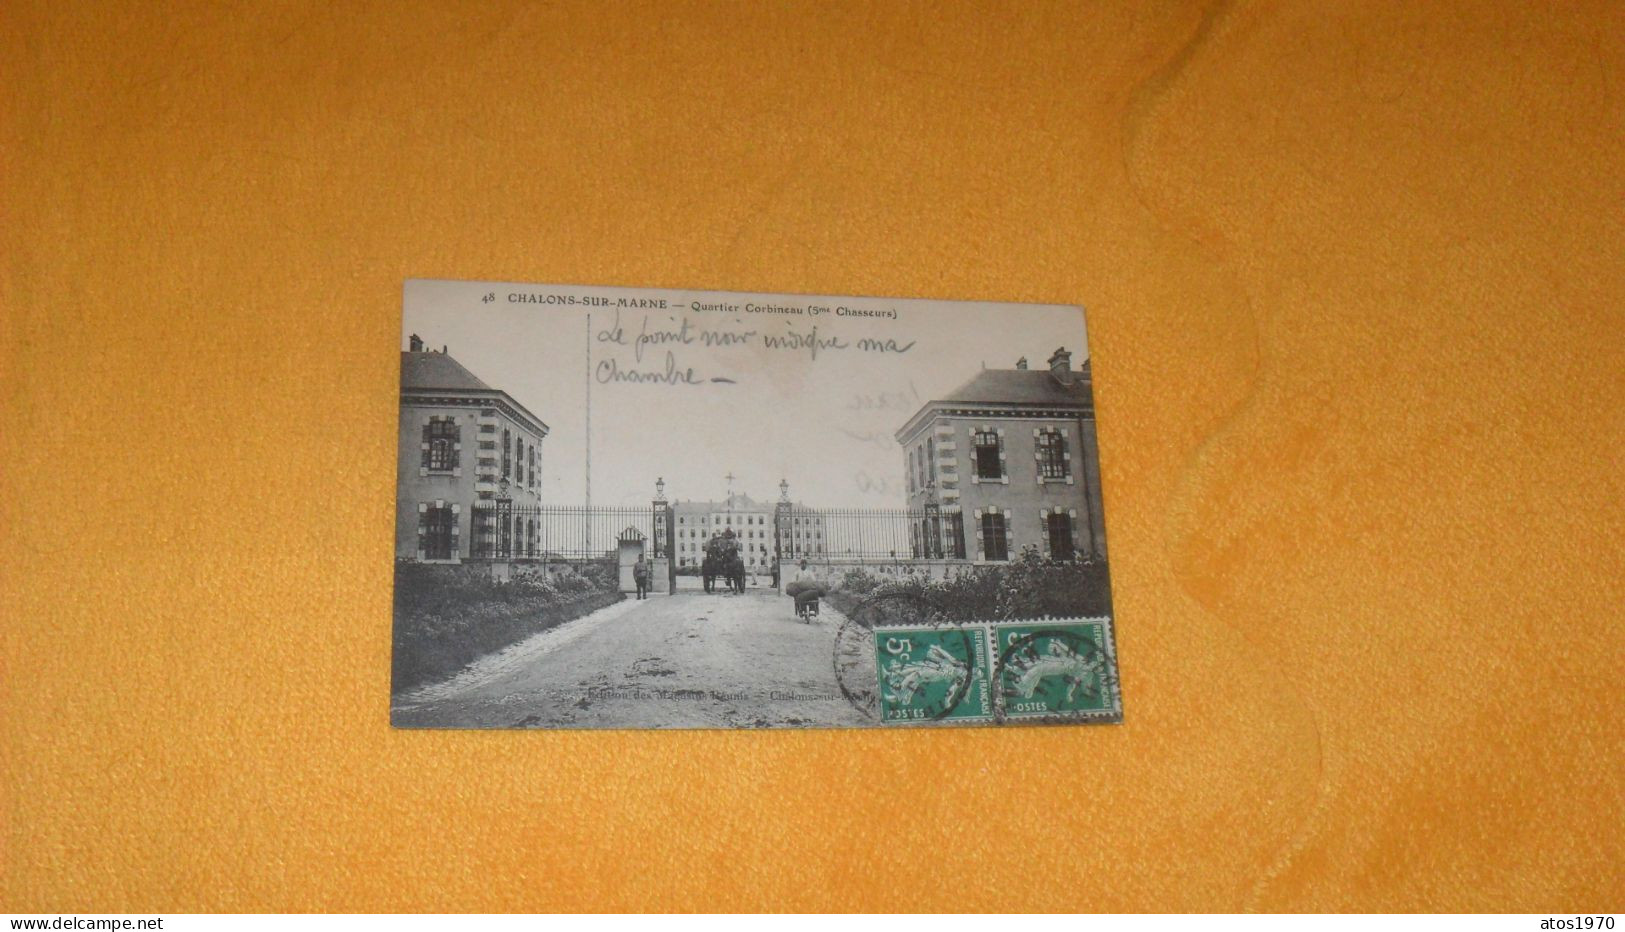 CARTE POSTALE ANCIENNE CIRCULEE DE 1911../ CHALONS SUR MARNE.- QUARTIER CORBINEAU 5me CHASSEURS..CACHETS + TIMBRES - Châlons-sur-Marne